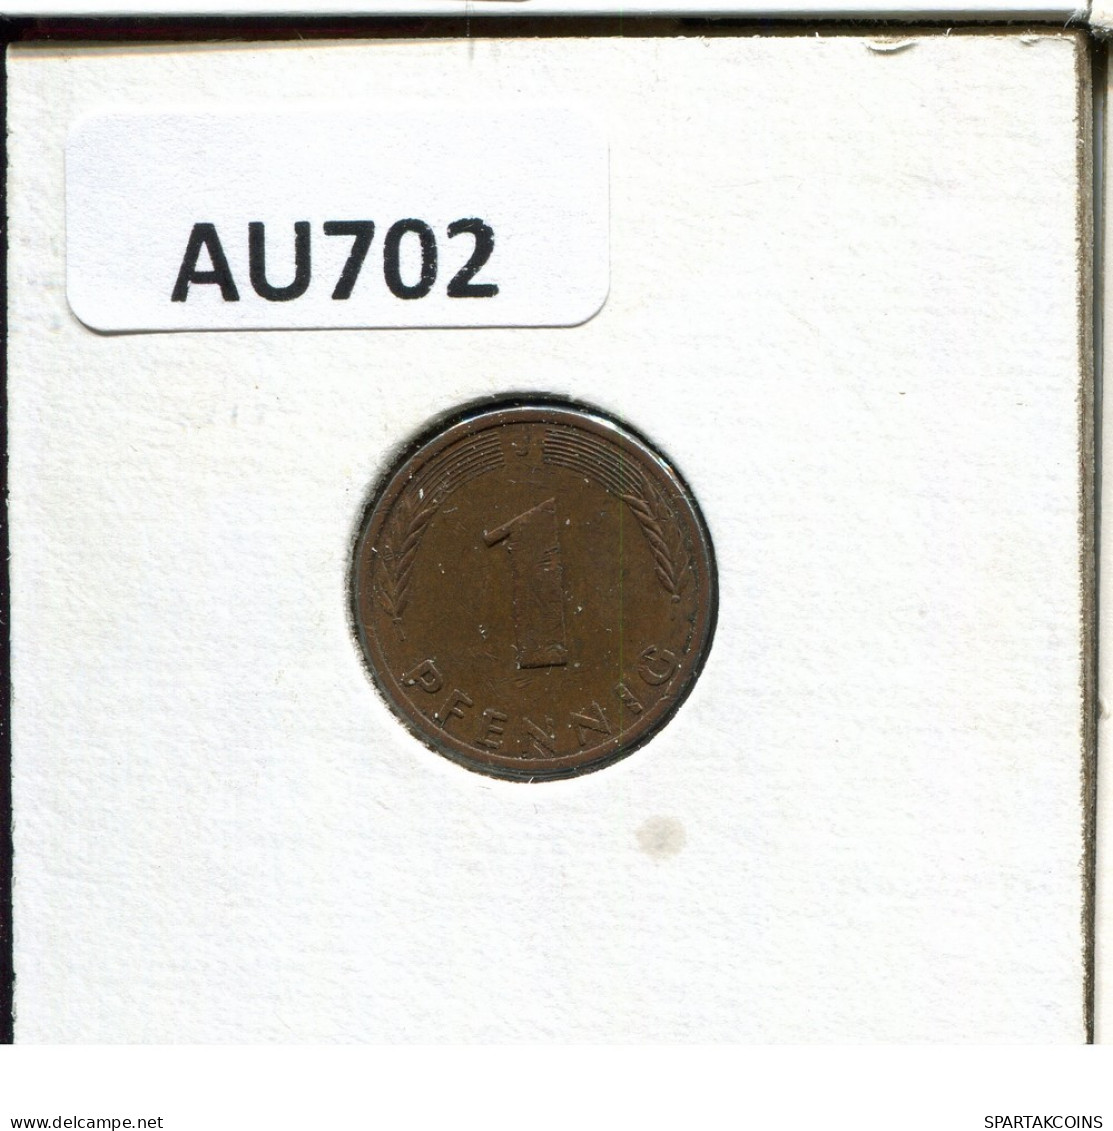 1 PFENNIG 1978 J BRD ALEMANIA Moneda GERMANY #AU702.E.A - 1 Pfennig